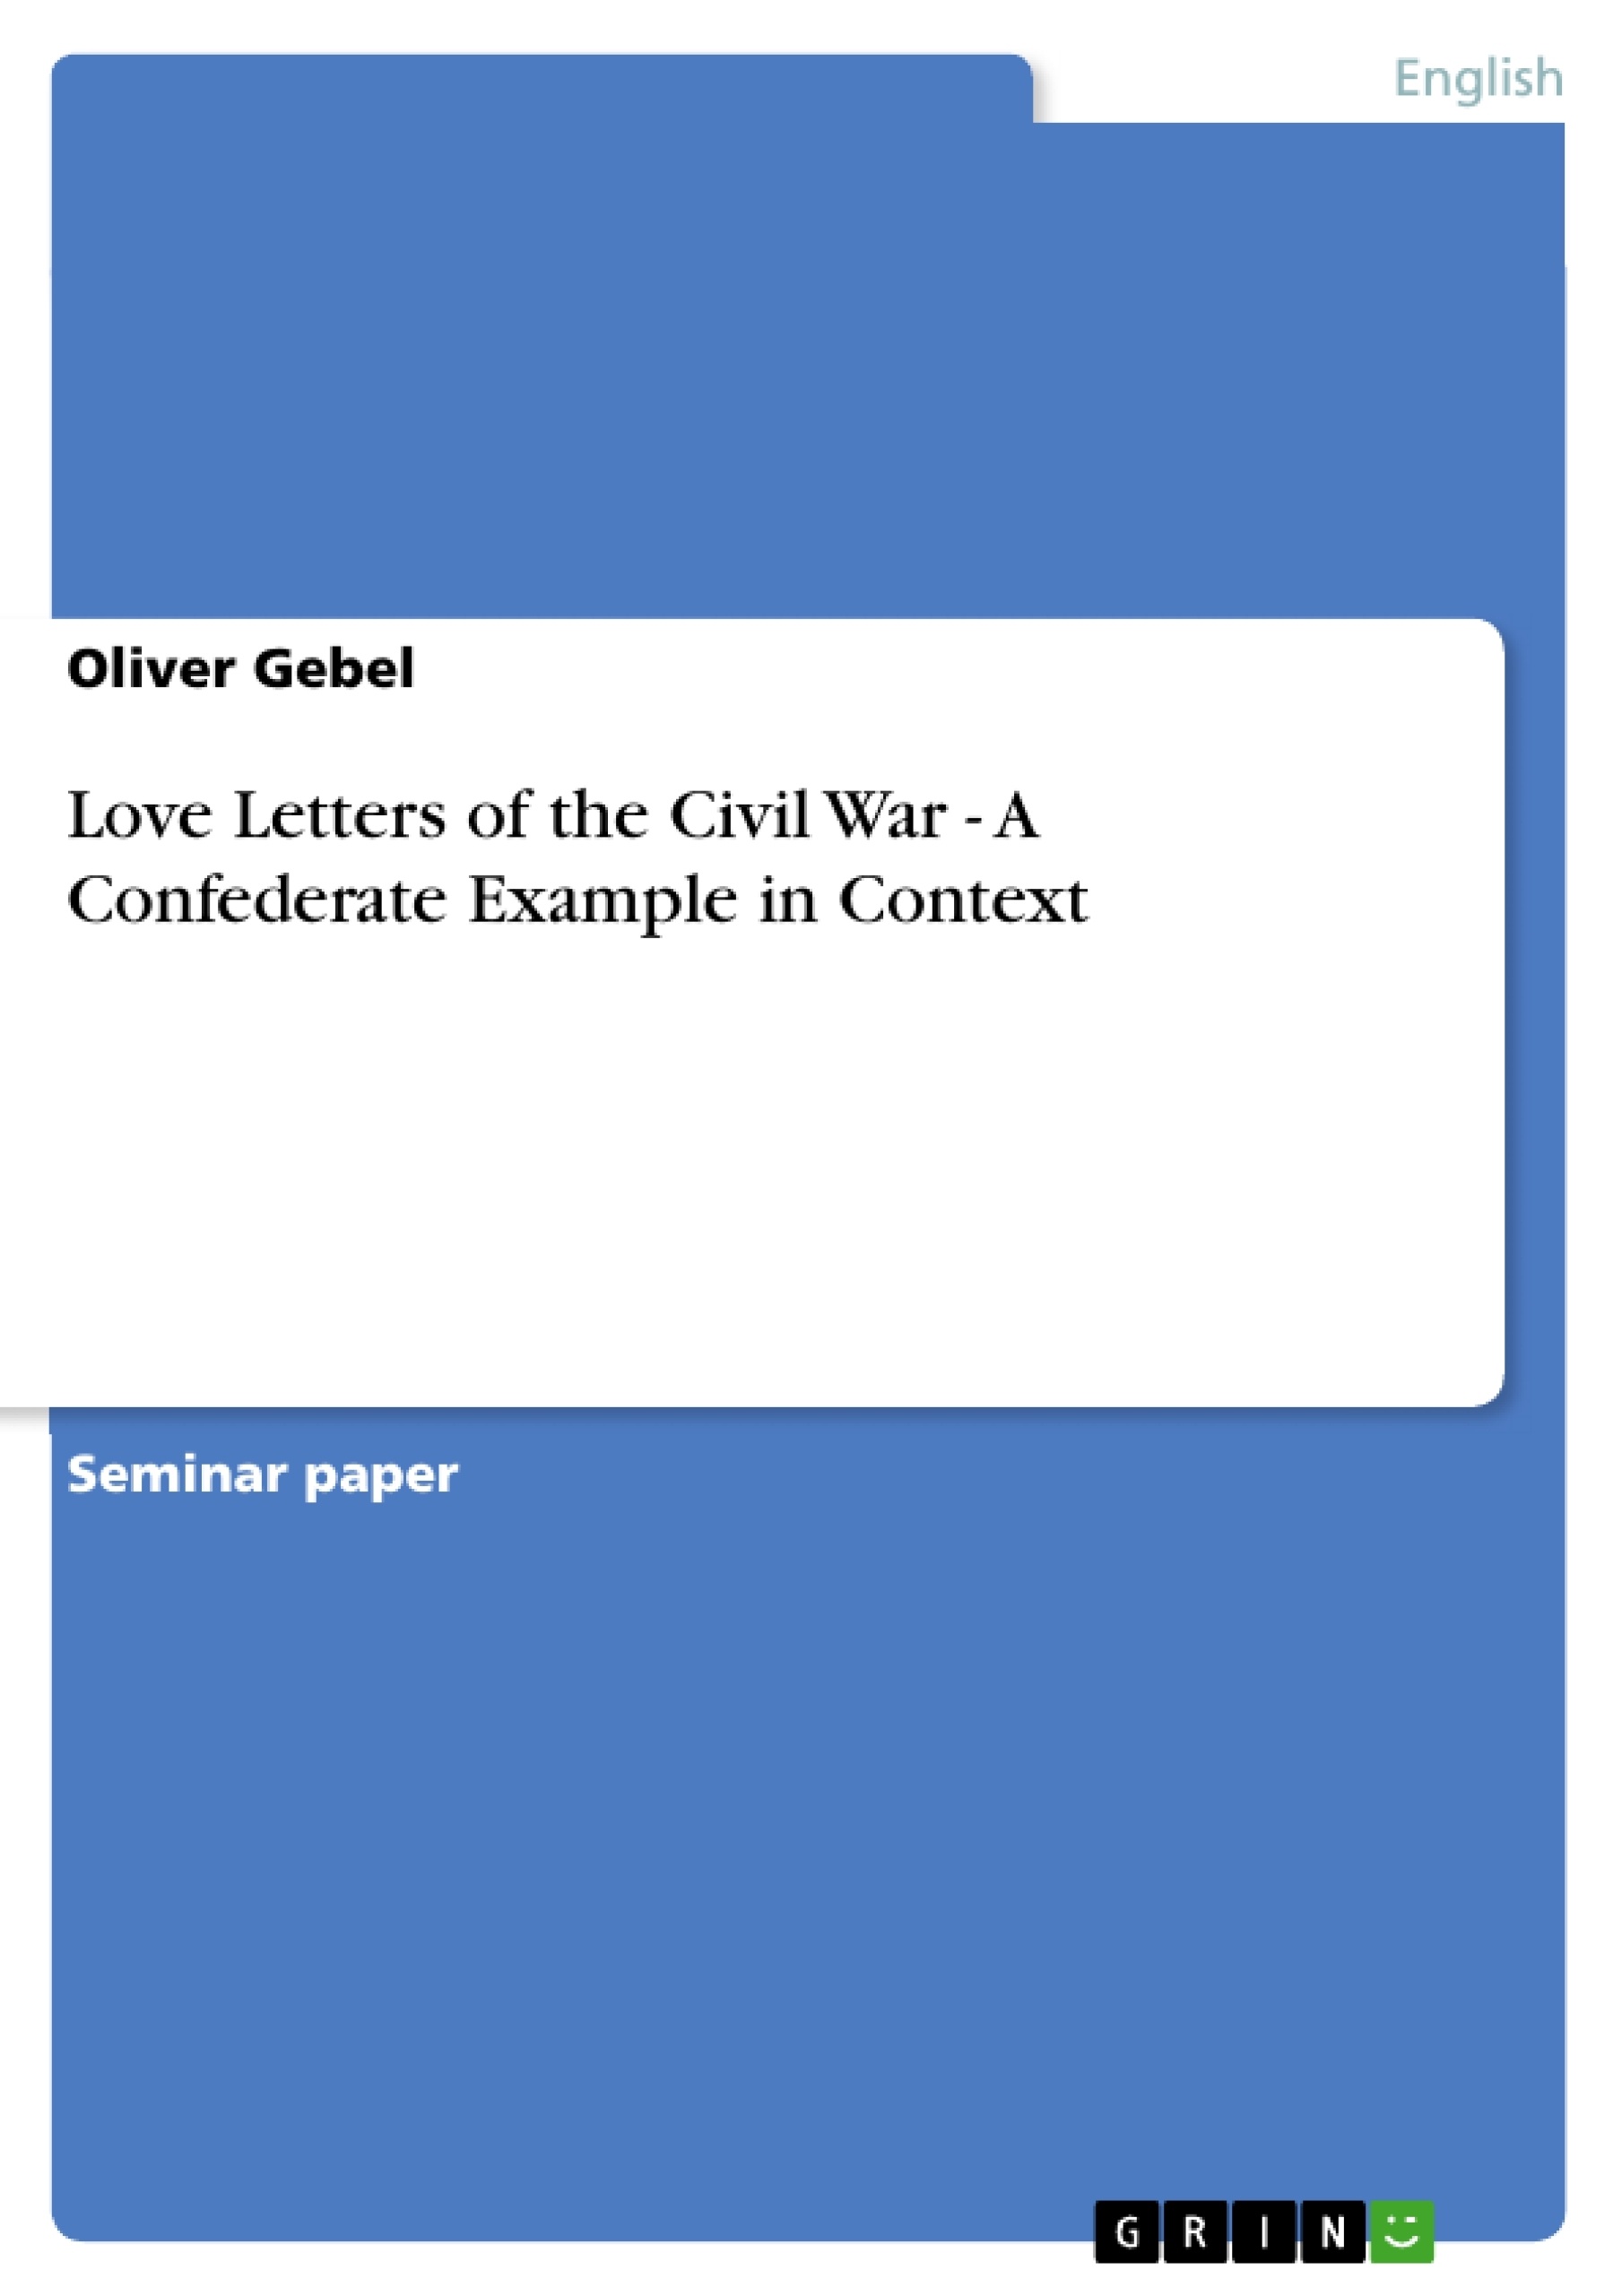 Context essay conflict